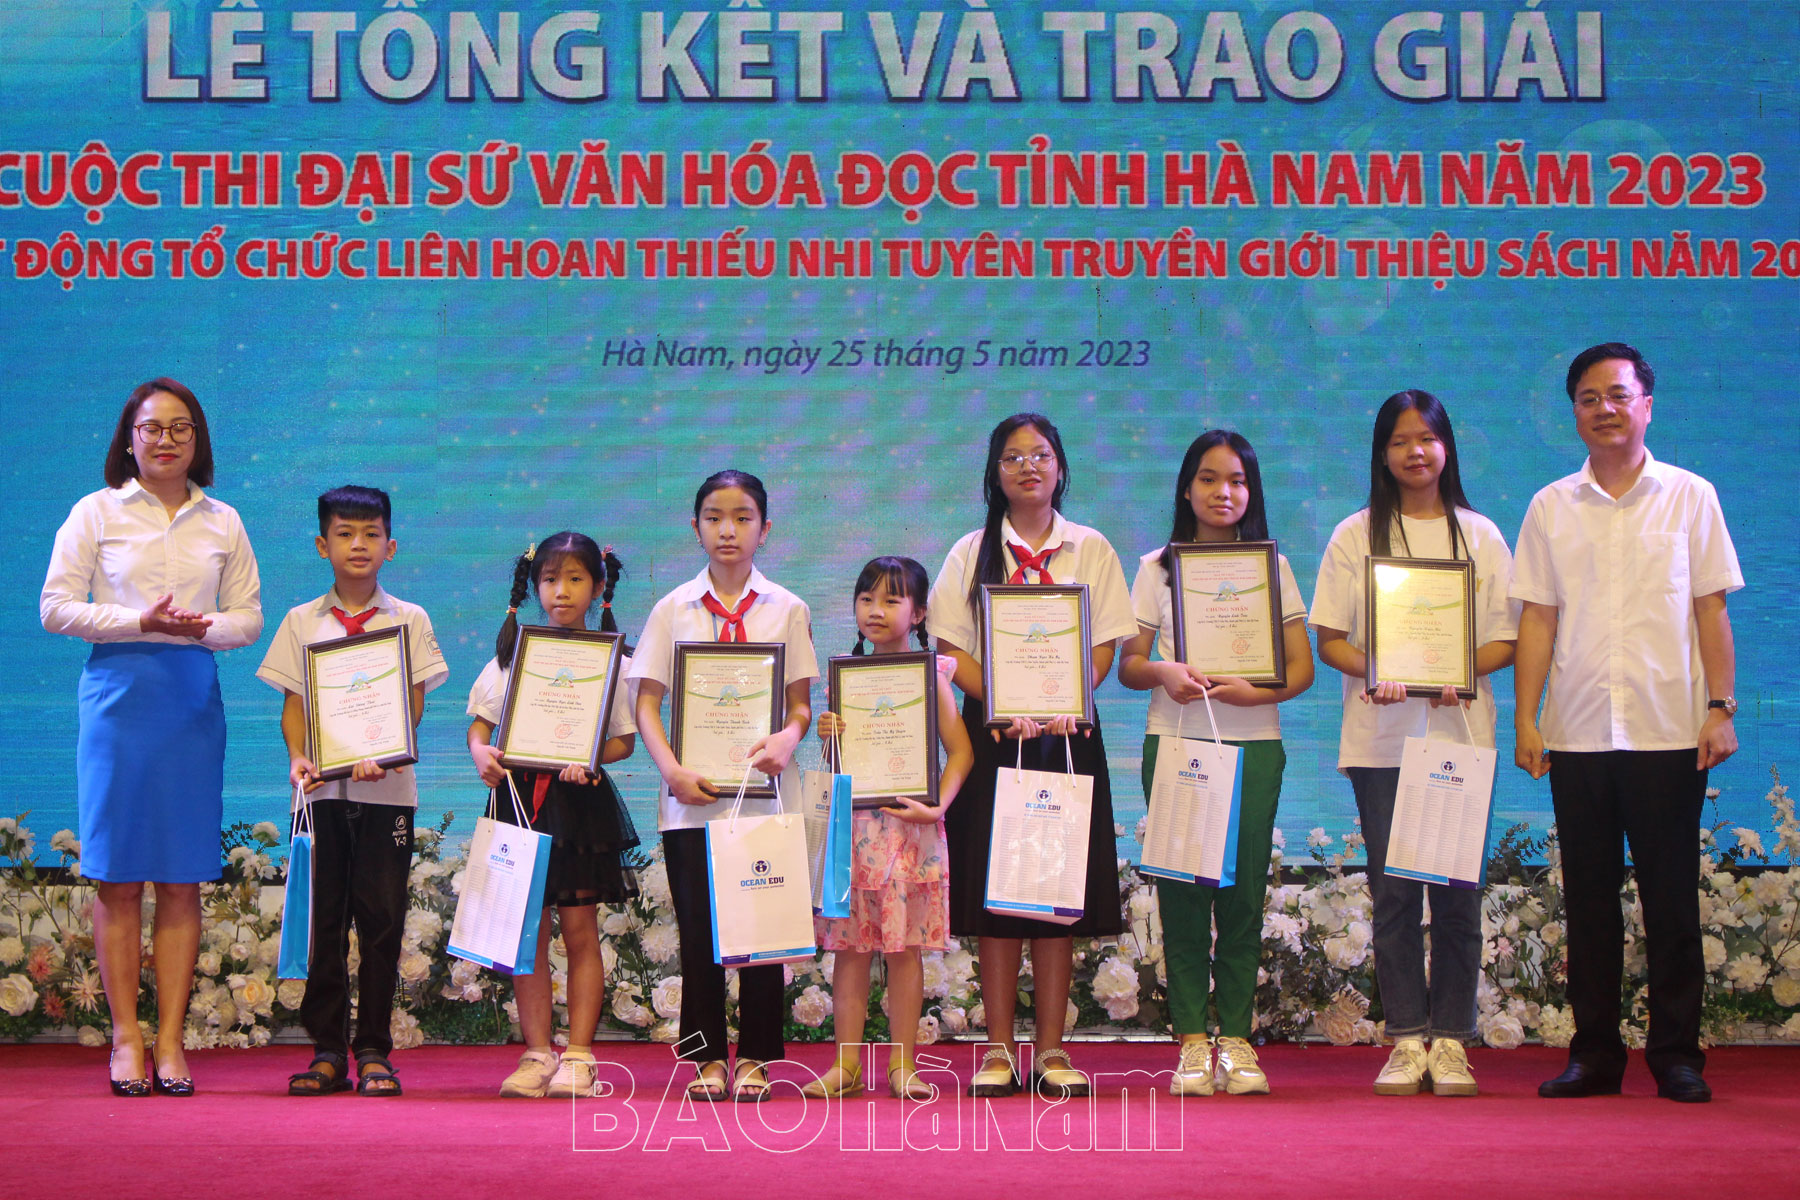 Tổng kết Cuộc thi Đại sứ văn hóa đọc tỉnh Hà Nam năm 2023